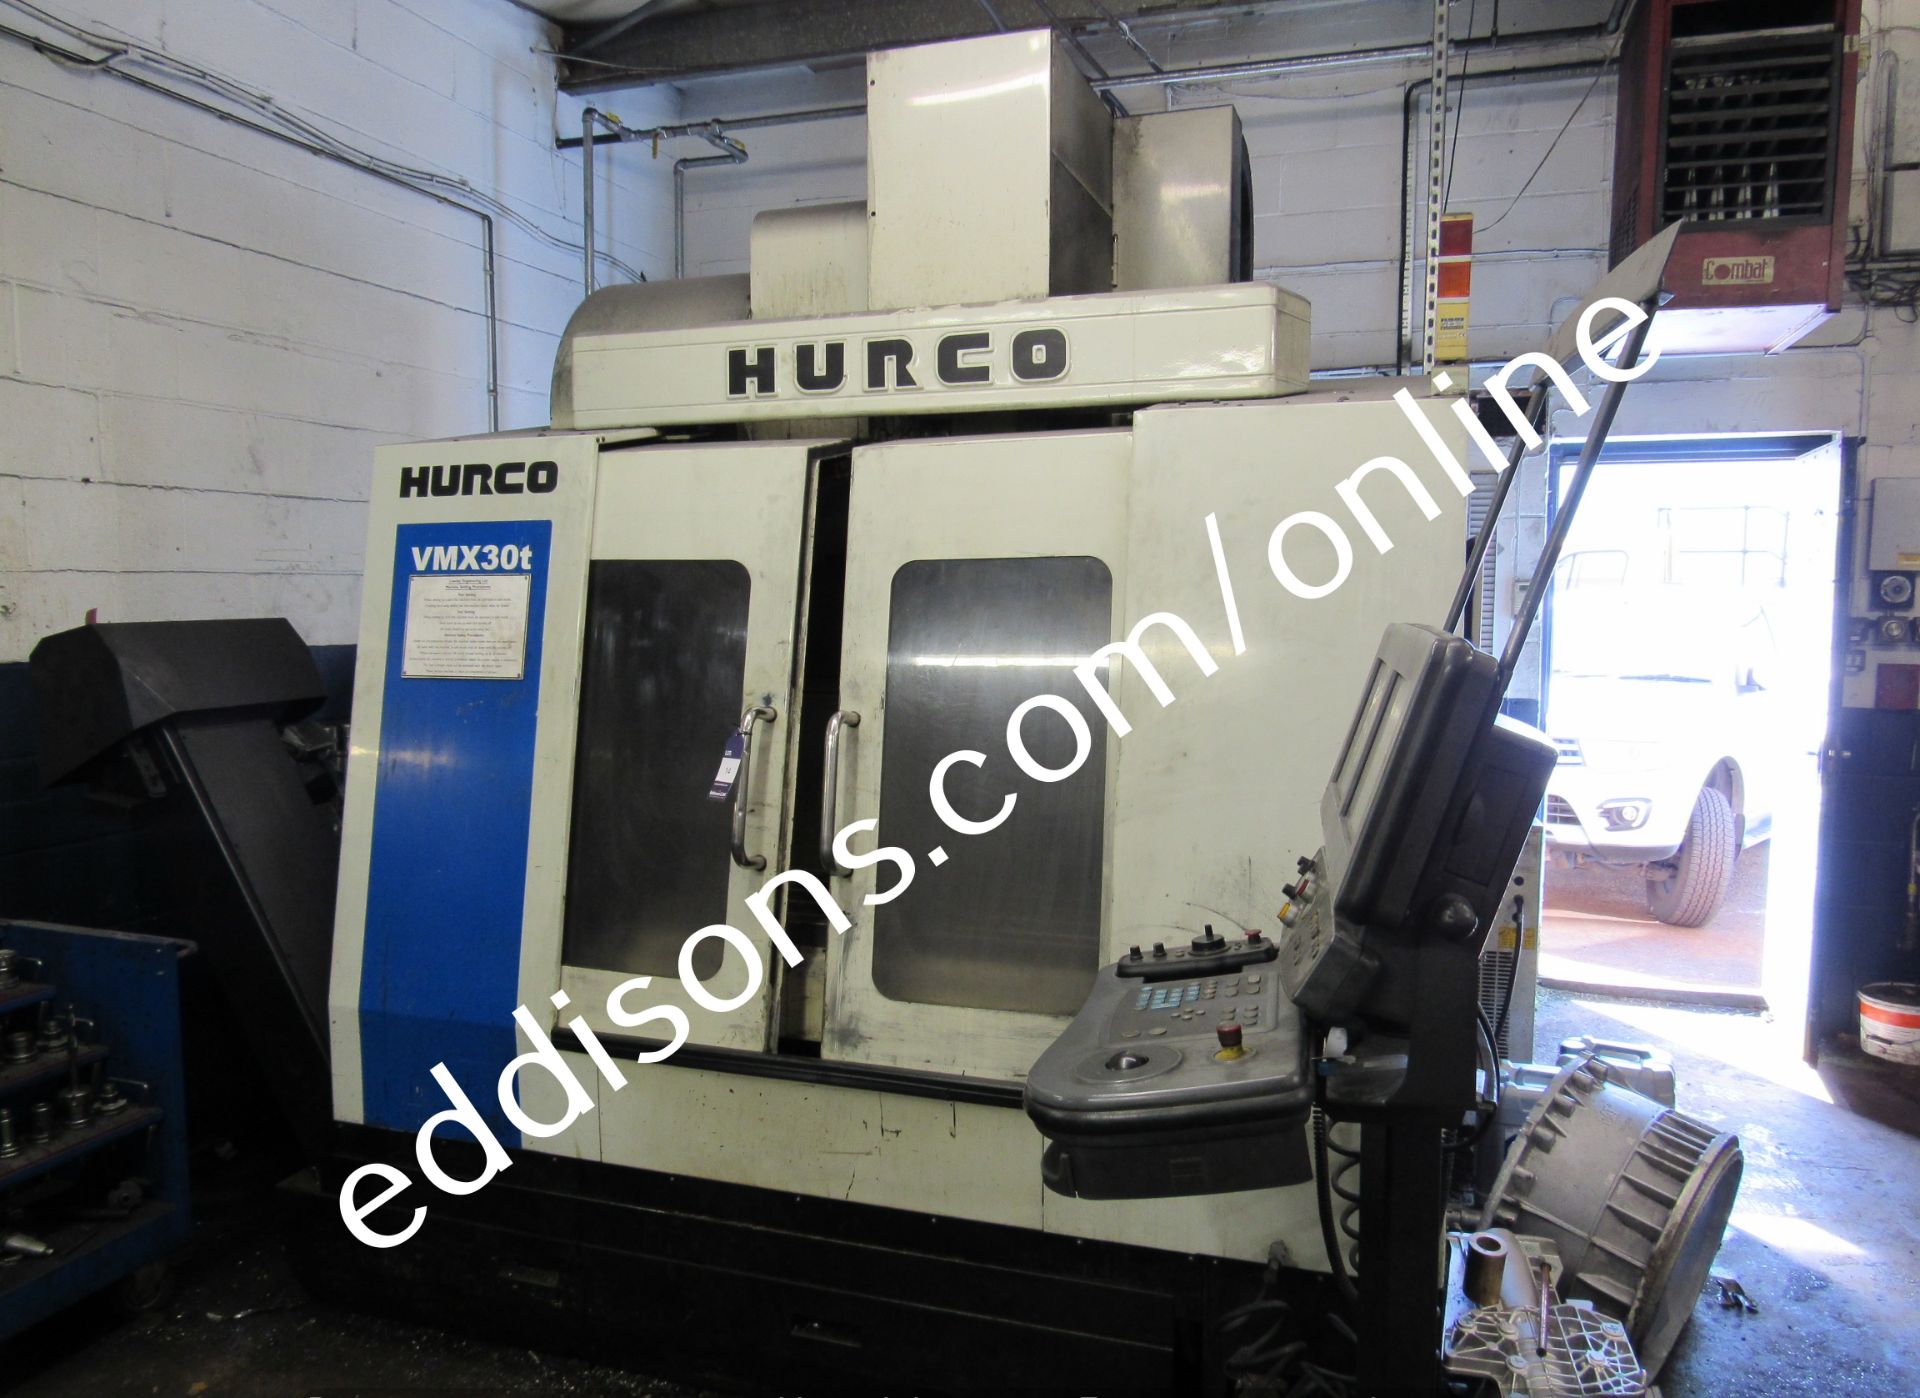 Hurco VMX30t CNC machining centre (762mm x 508mm b - Image 11 of 11